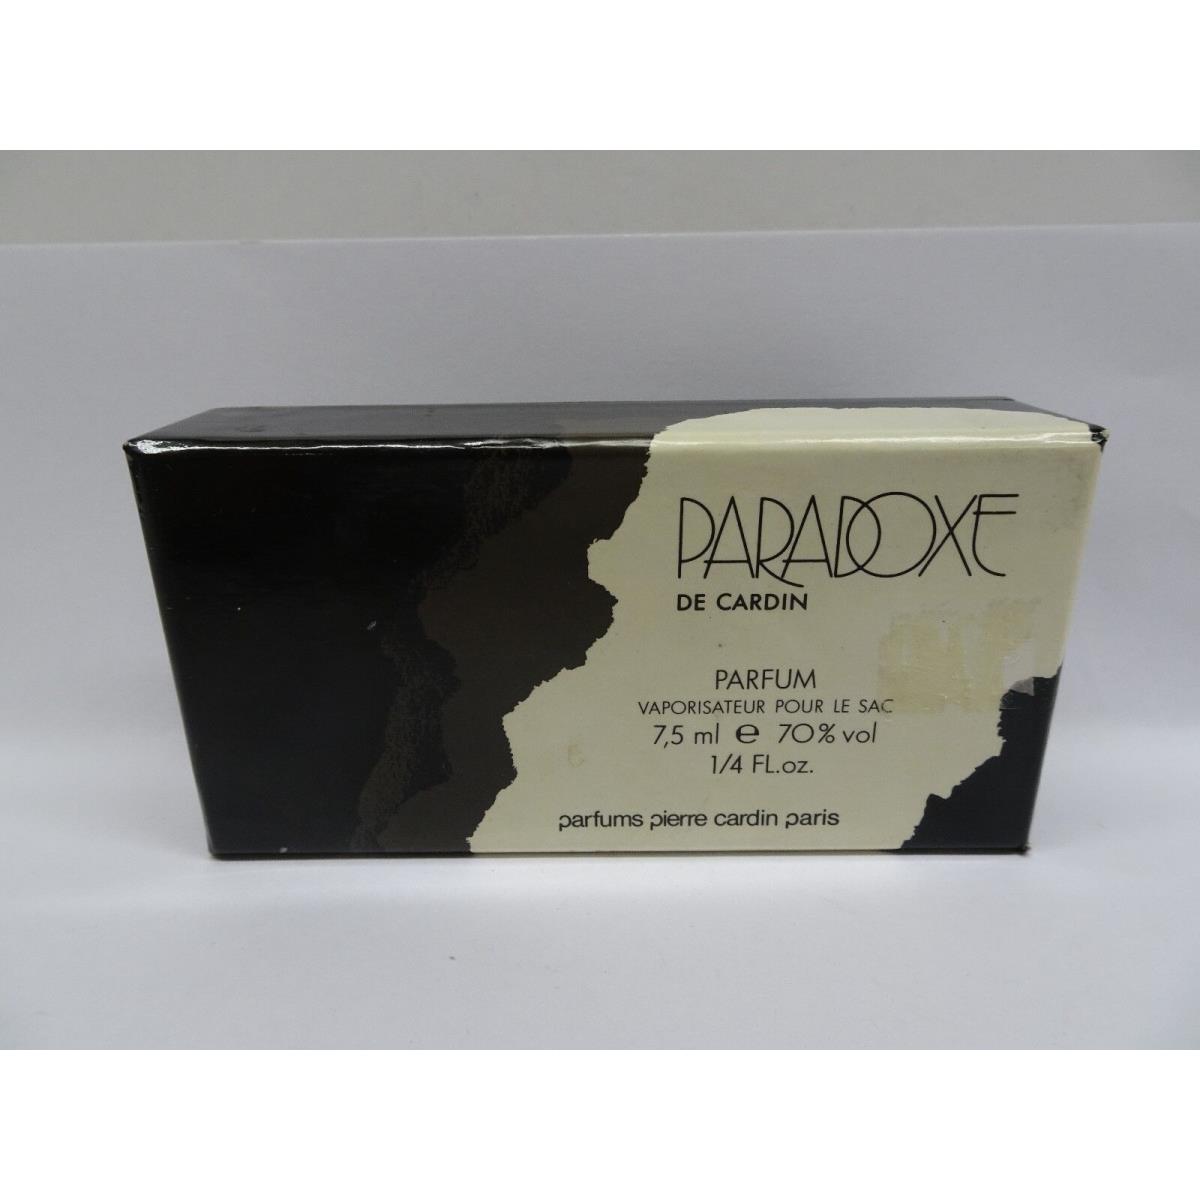 Paradoxe de Cardin 1/4 oz Parfum Spray Boxed